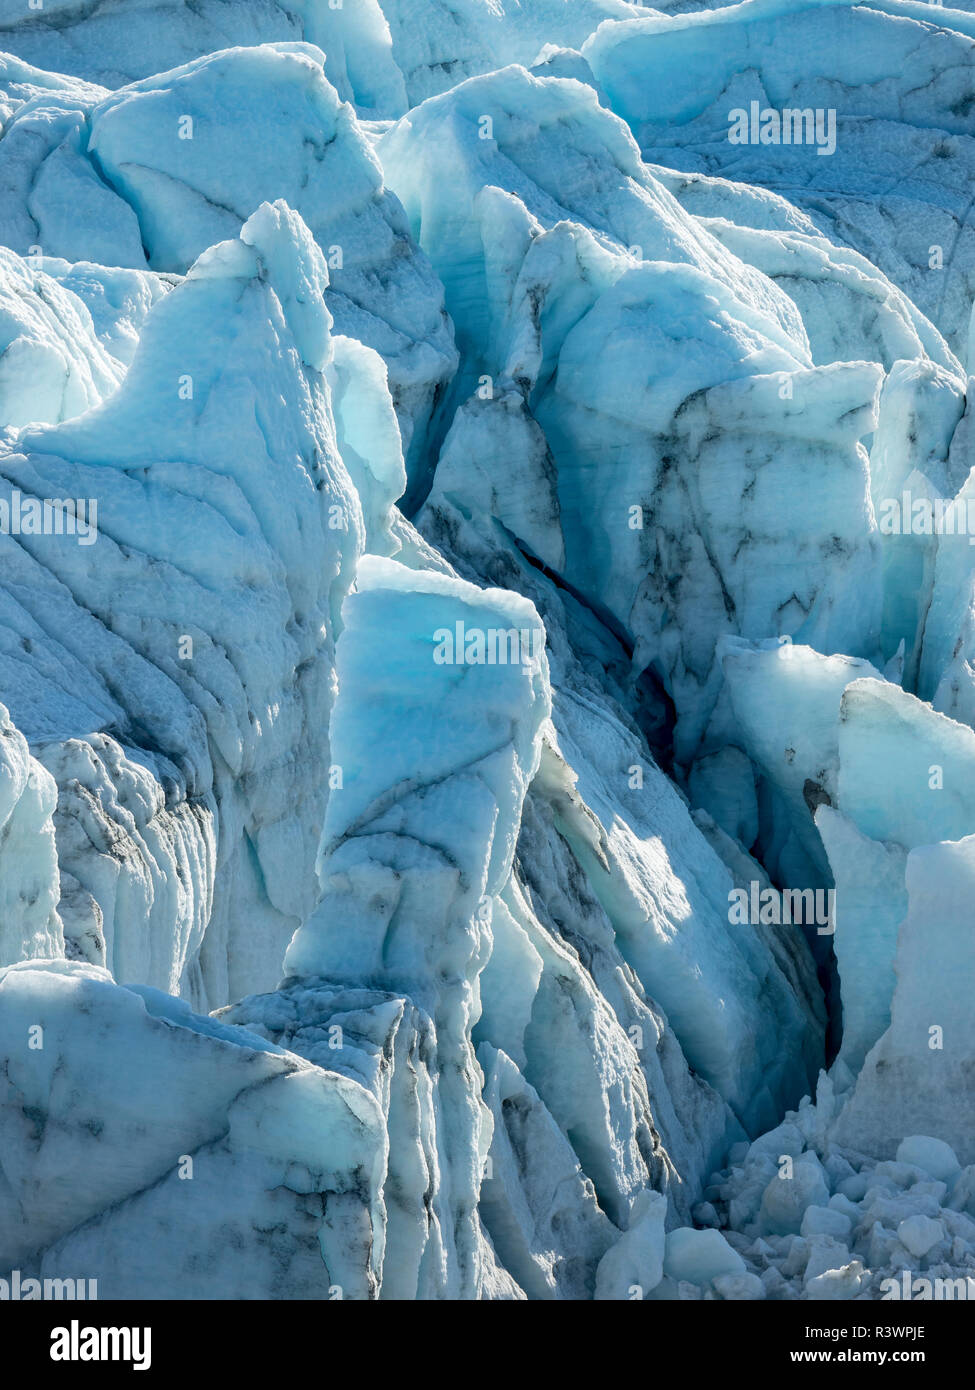 Le Russell Glacier. Paysage près de l'inlandsis du Groenland près de Kangerlussuaq, Groenland, Danemark Banque D'Images